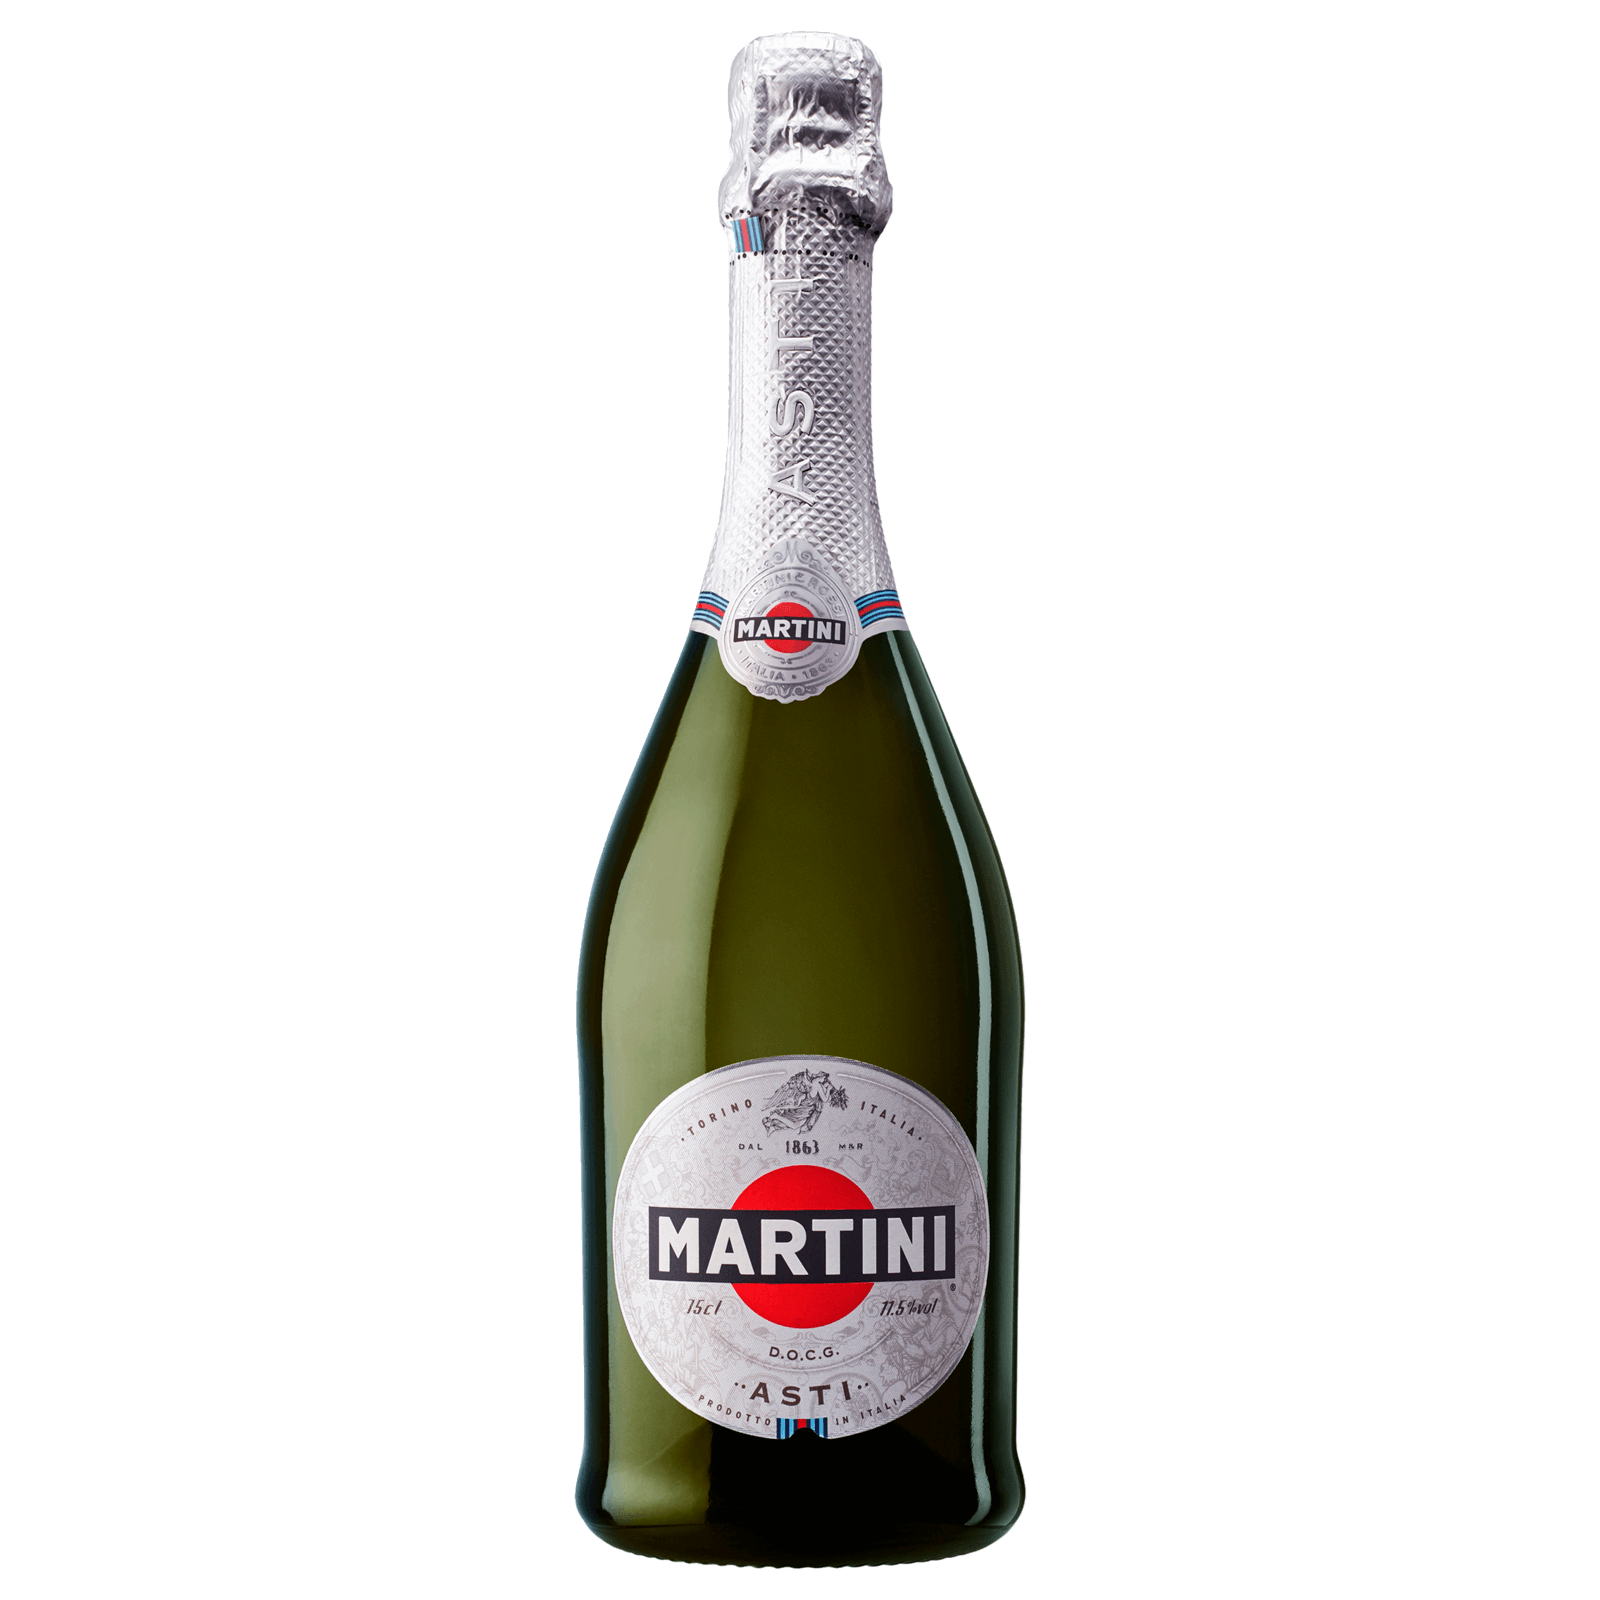 Martini Asti DOCG REWE 0,75l online Spumante bei bestellen